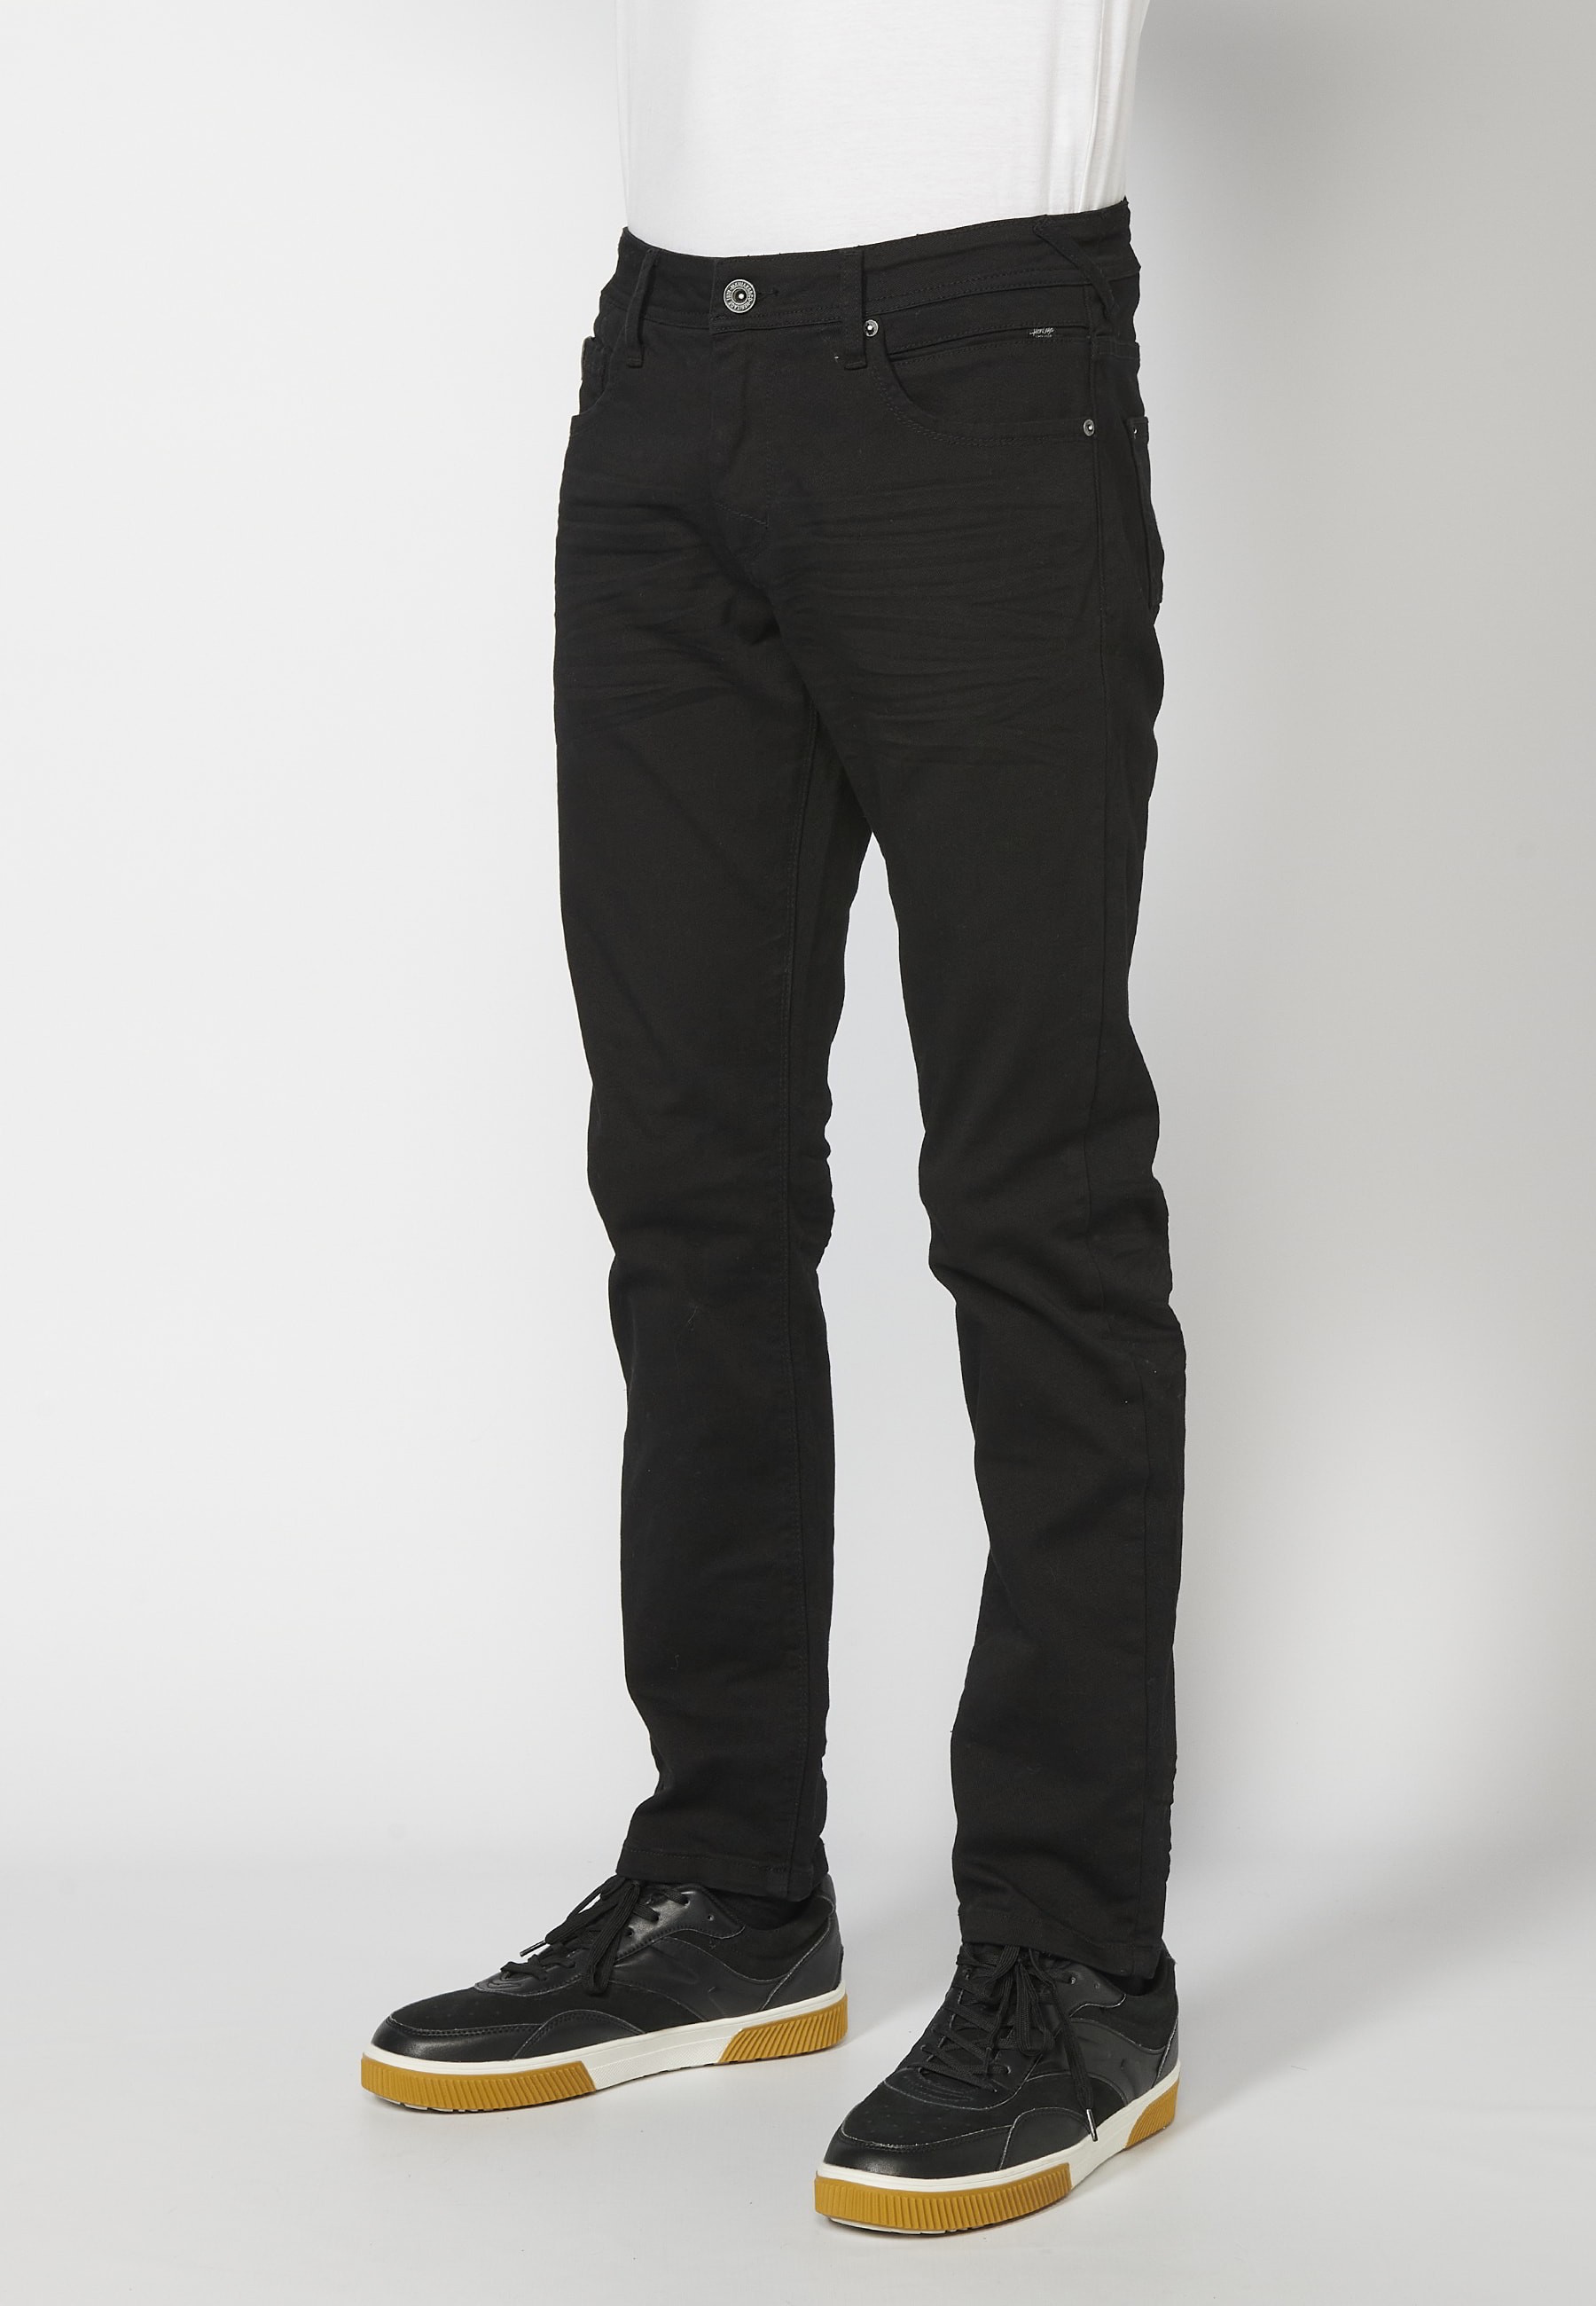 Lange Stretch-Hose in normaler Passform, mit fünf Taschen, schwarze Farbe, für Herren